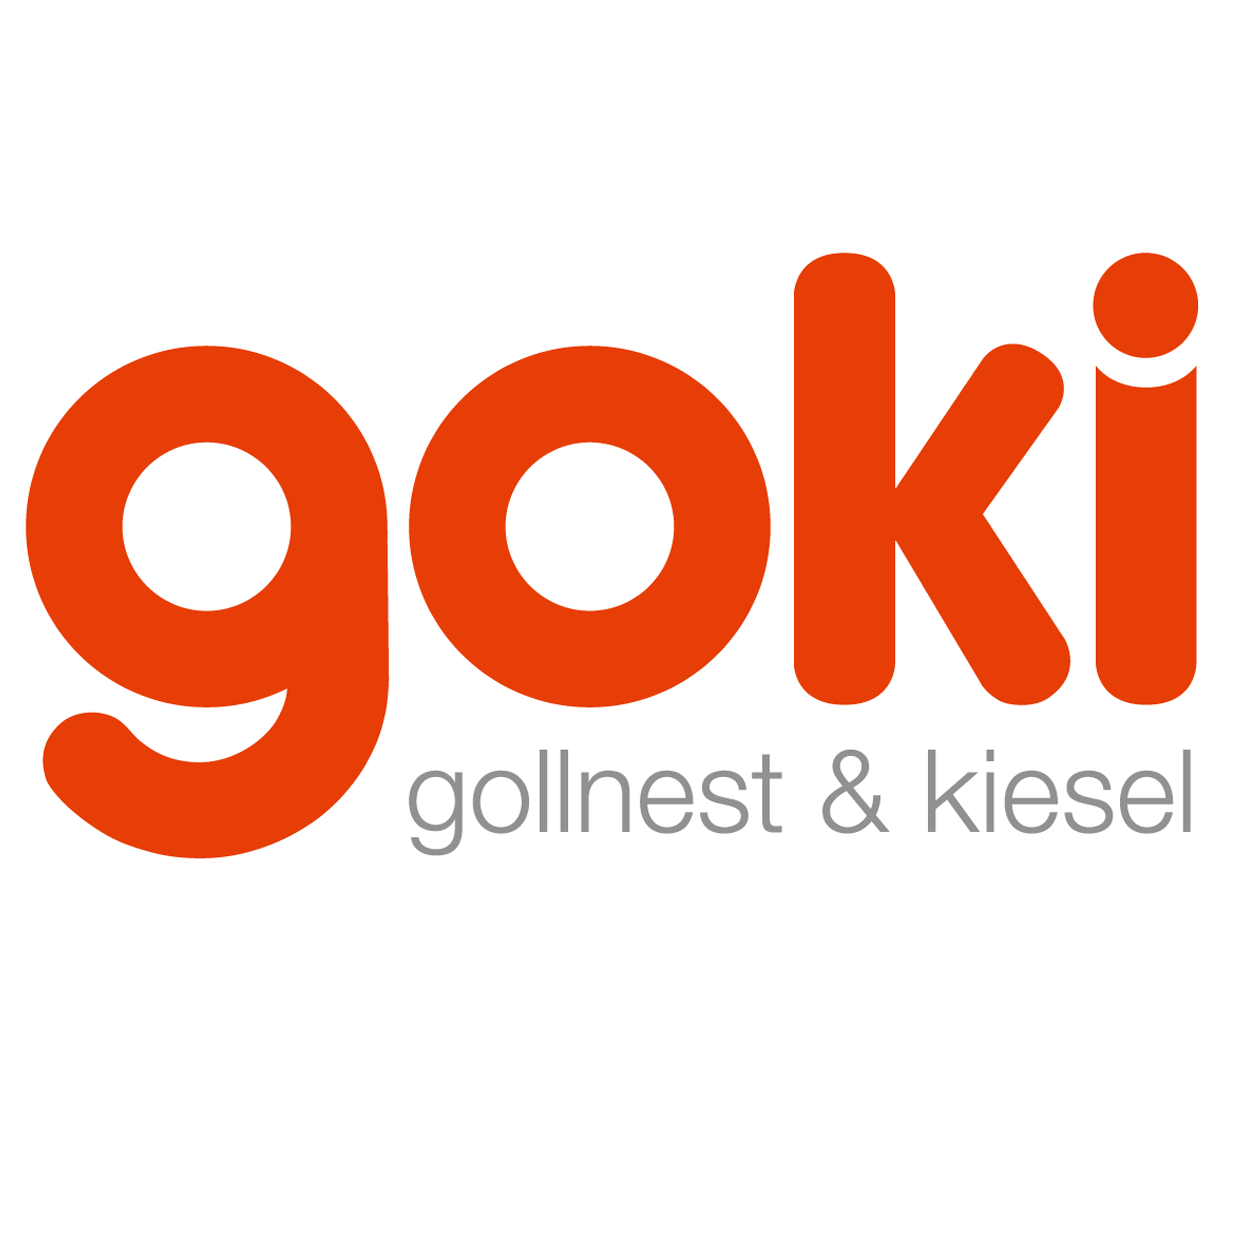 Goki